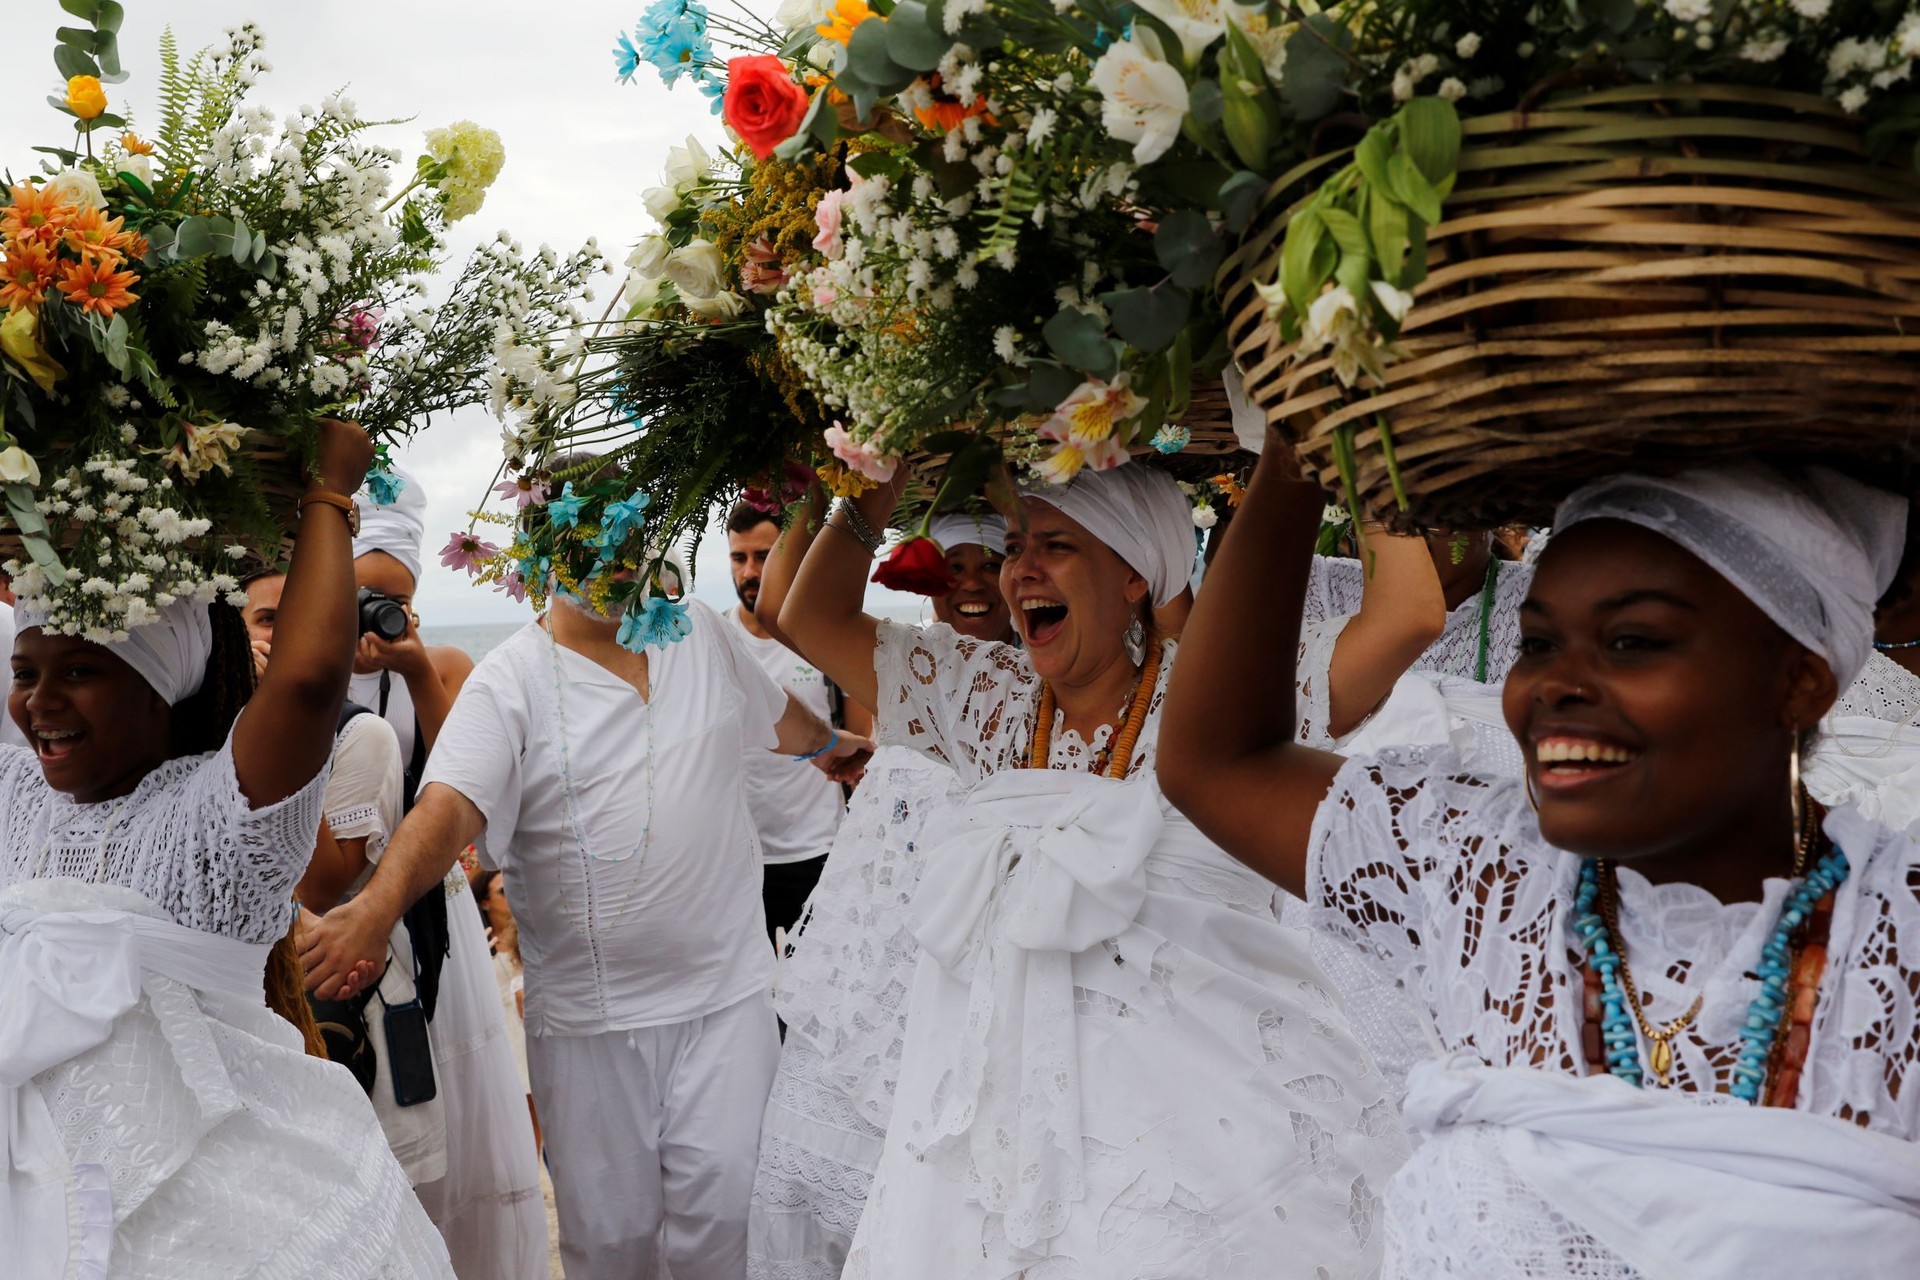 2 de fevereiro: Brasileiros celebram Nossa Senhora dos Navegantes e Iemanjá